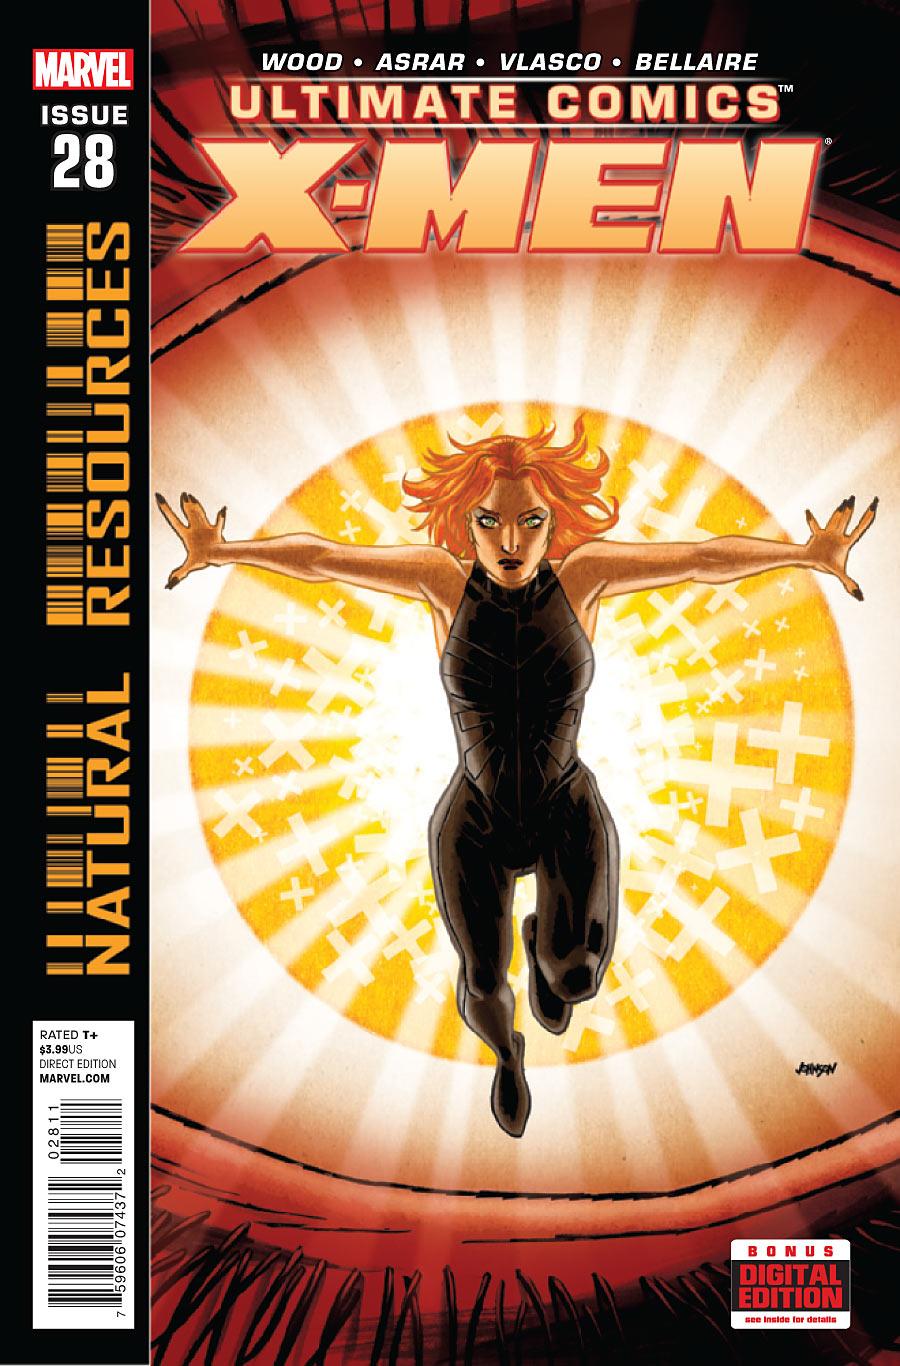 Ultimate Comics X-Men Vol. 1 #28